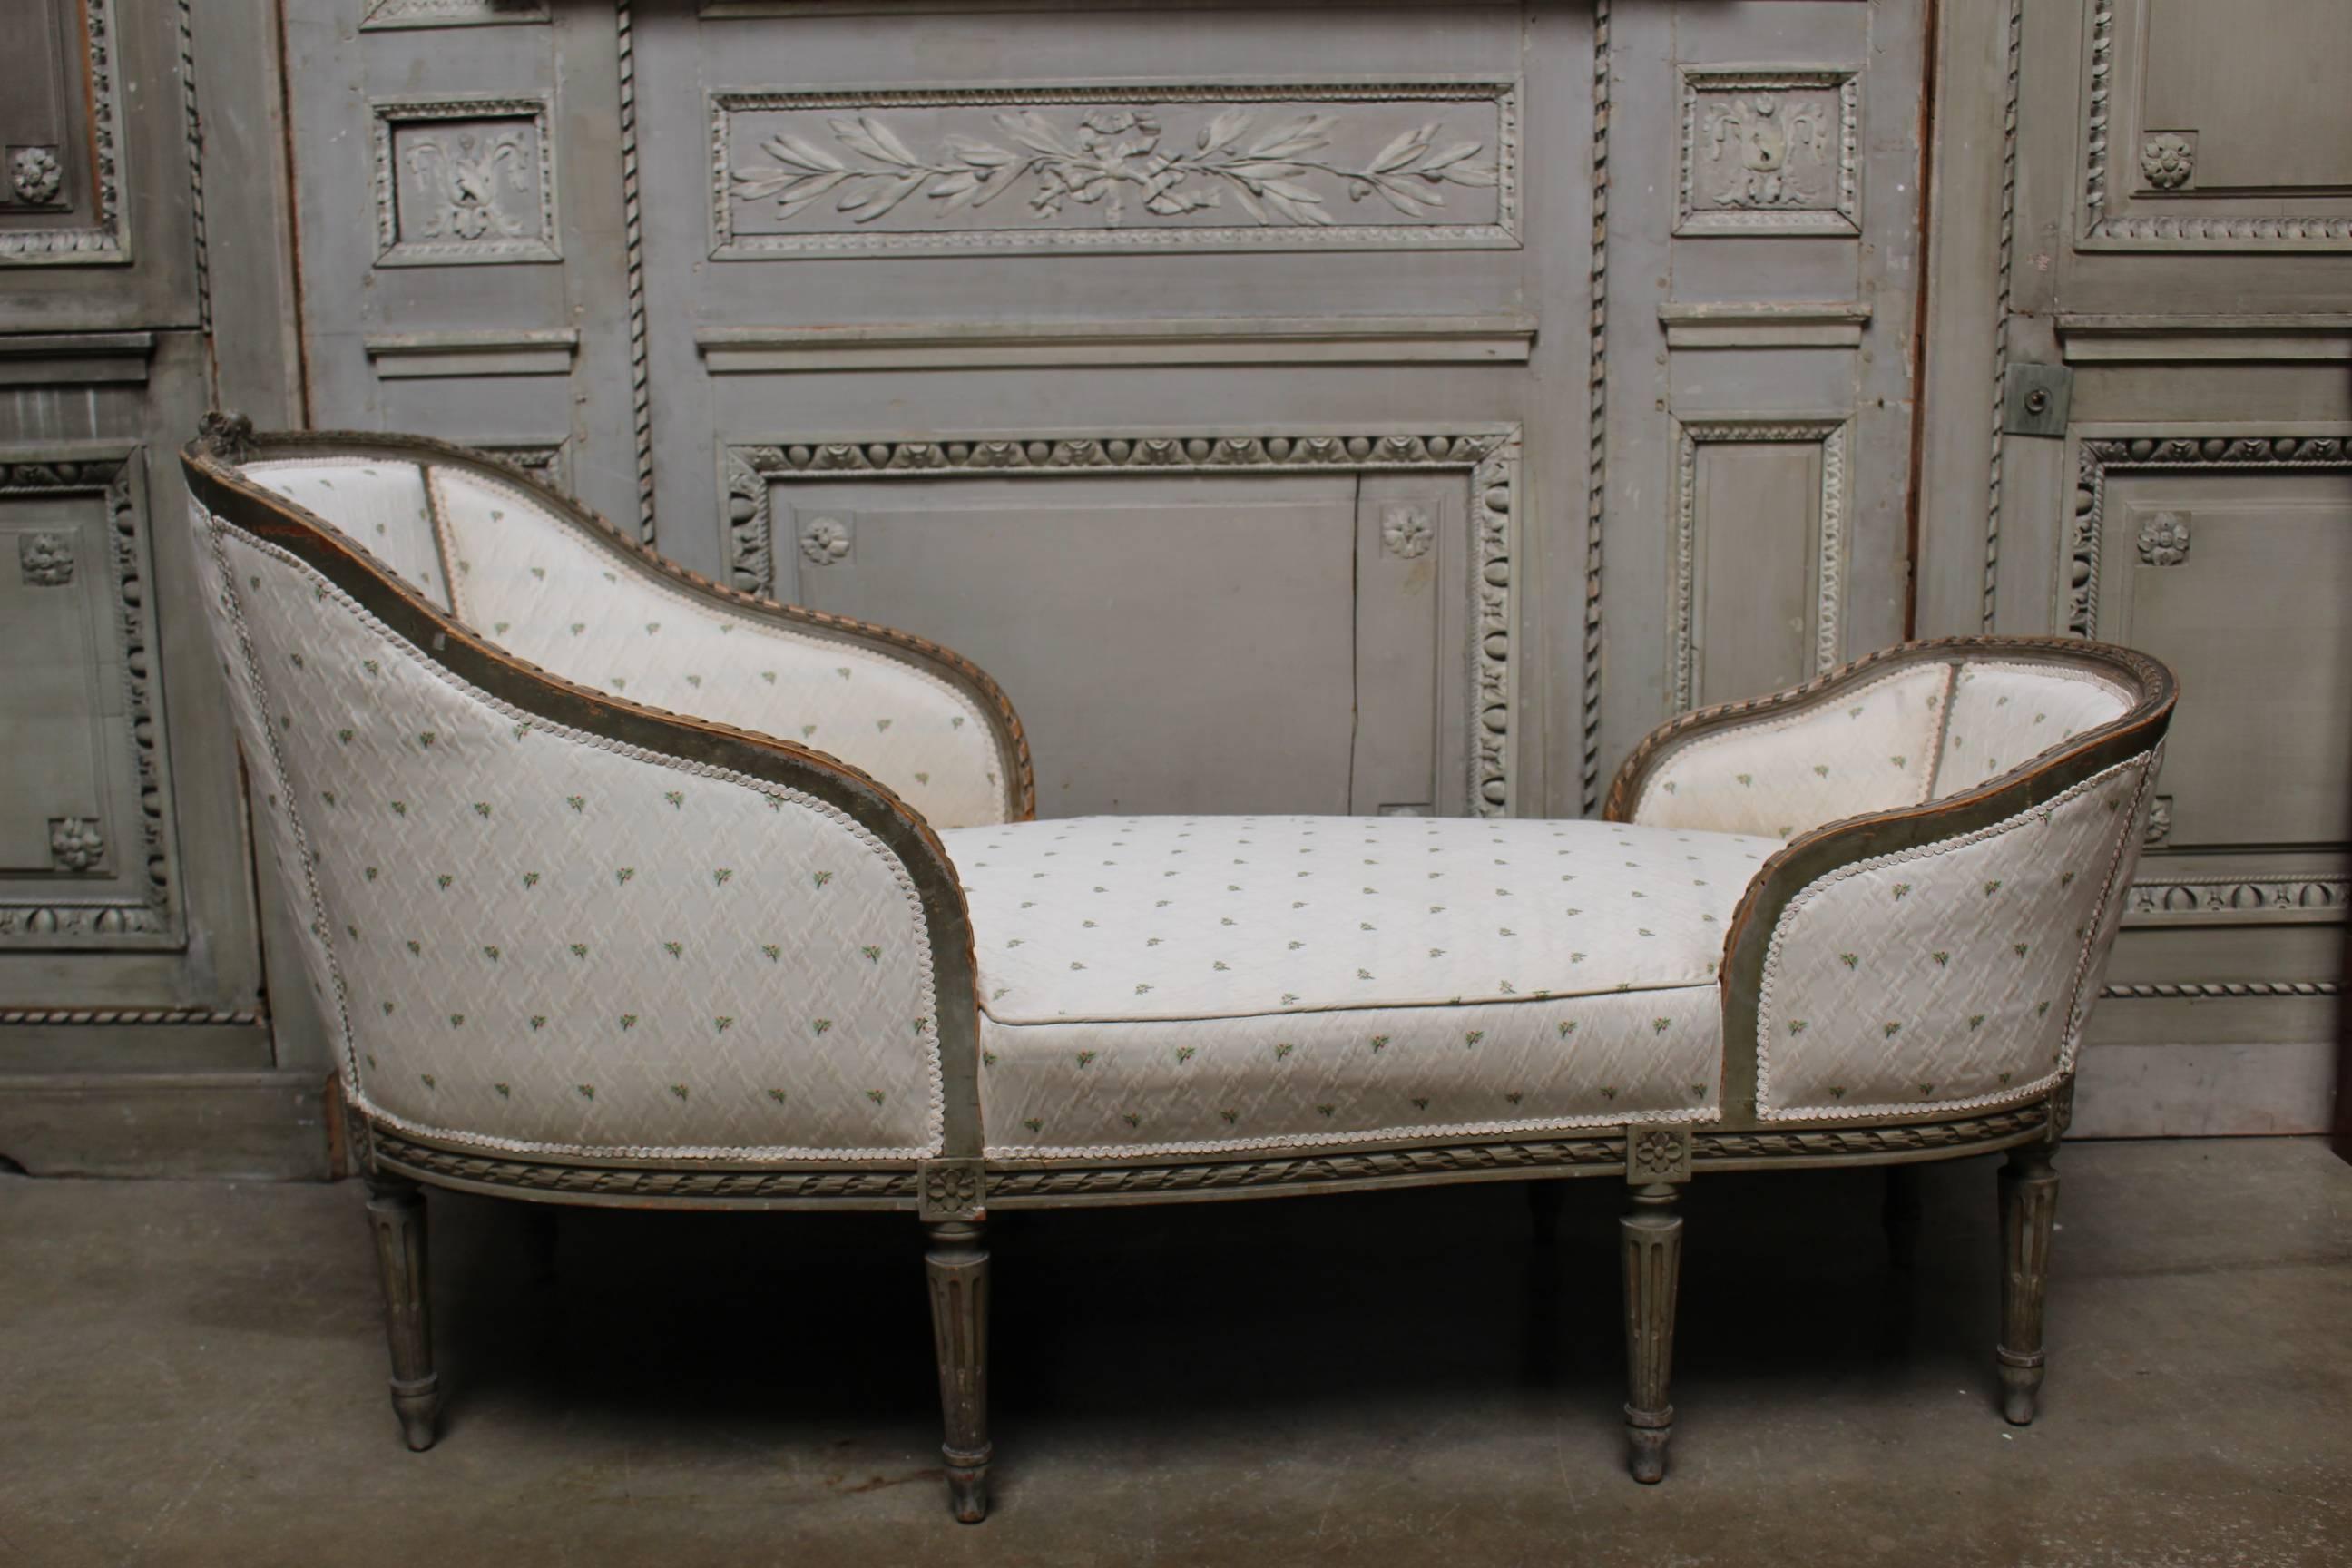 Chaise longue française de style Louis XVI de la fin du 19ème siècle avec une finition peinte en gris français.
Cette chaise longue est une merveilleuse petite échelle et est confortable à utiliser. Il est magnifiquement sculpté avec des godrons,